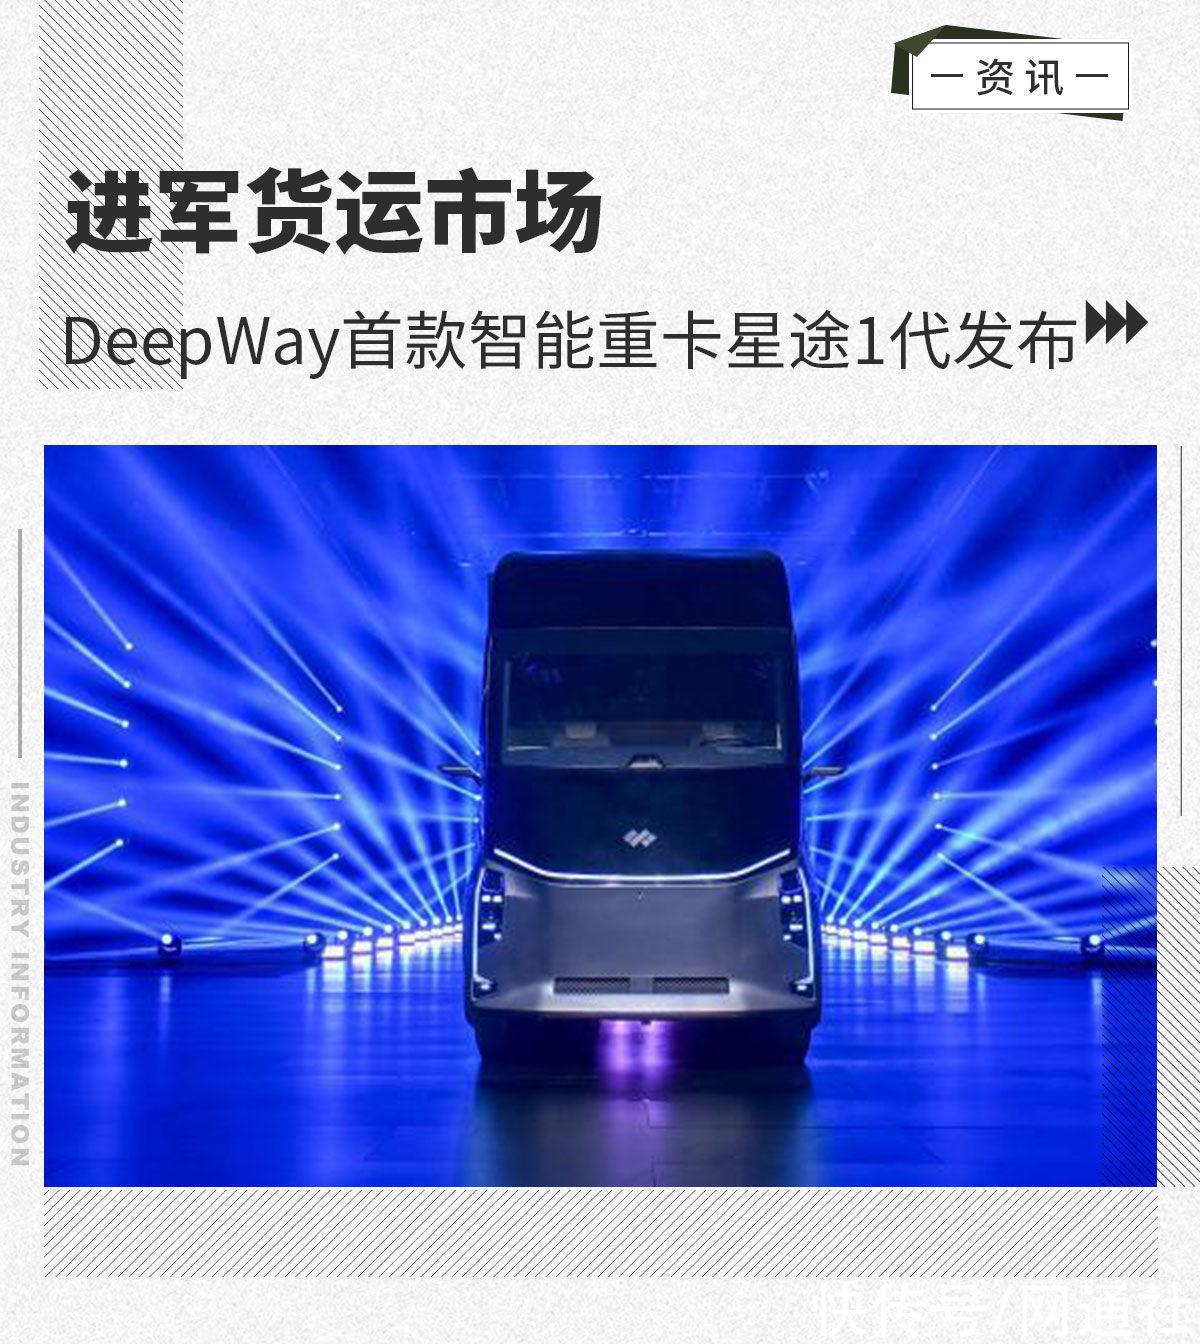 星途|进军货运市场 DeepWay首款智能重卡星途1代发布